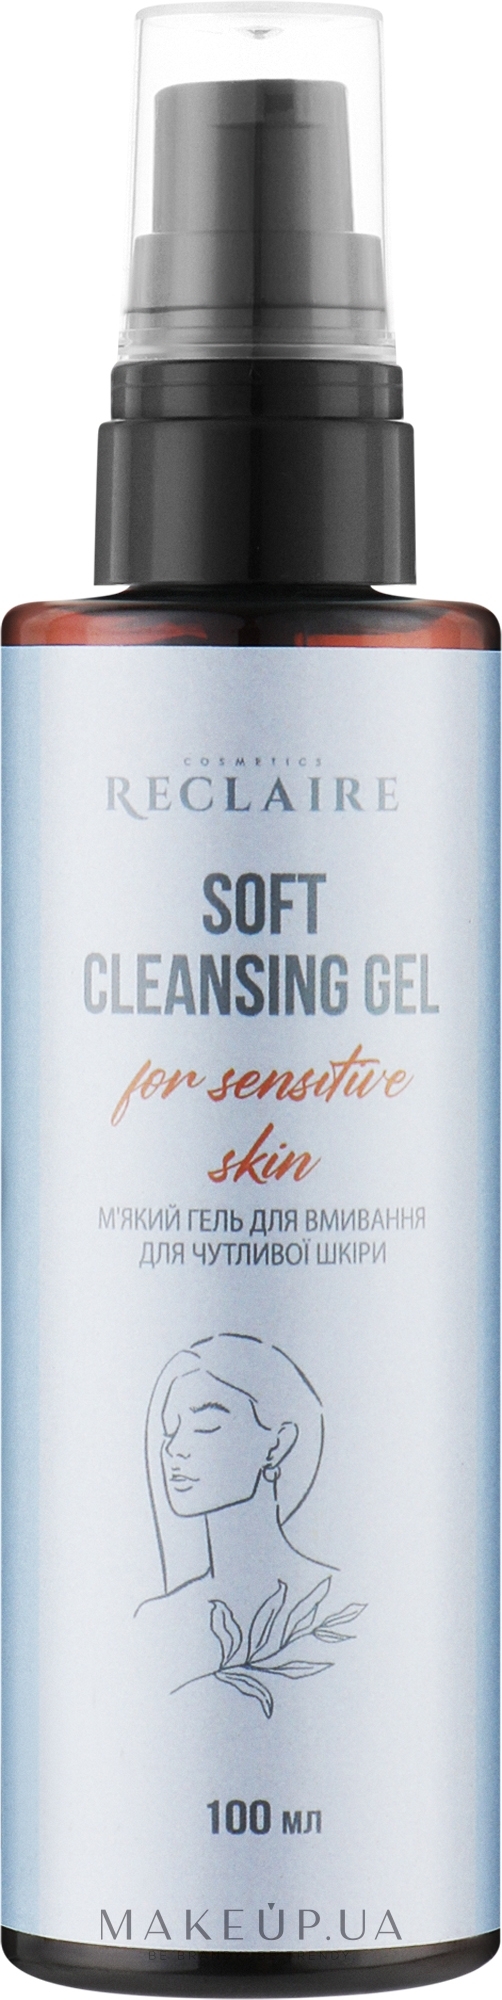 М'який гель для вмивання - Reclaire Soft Cleansing Gel — фото 100ml